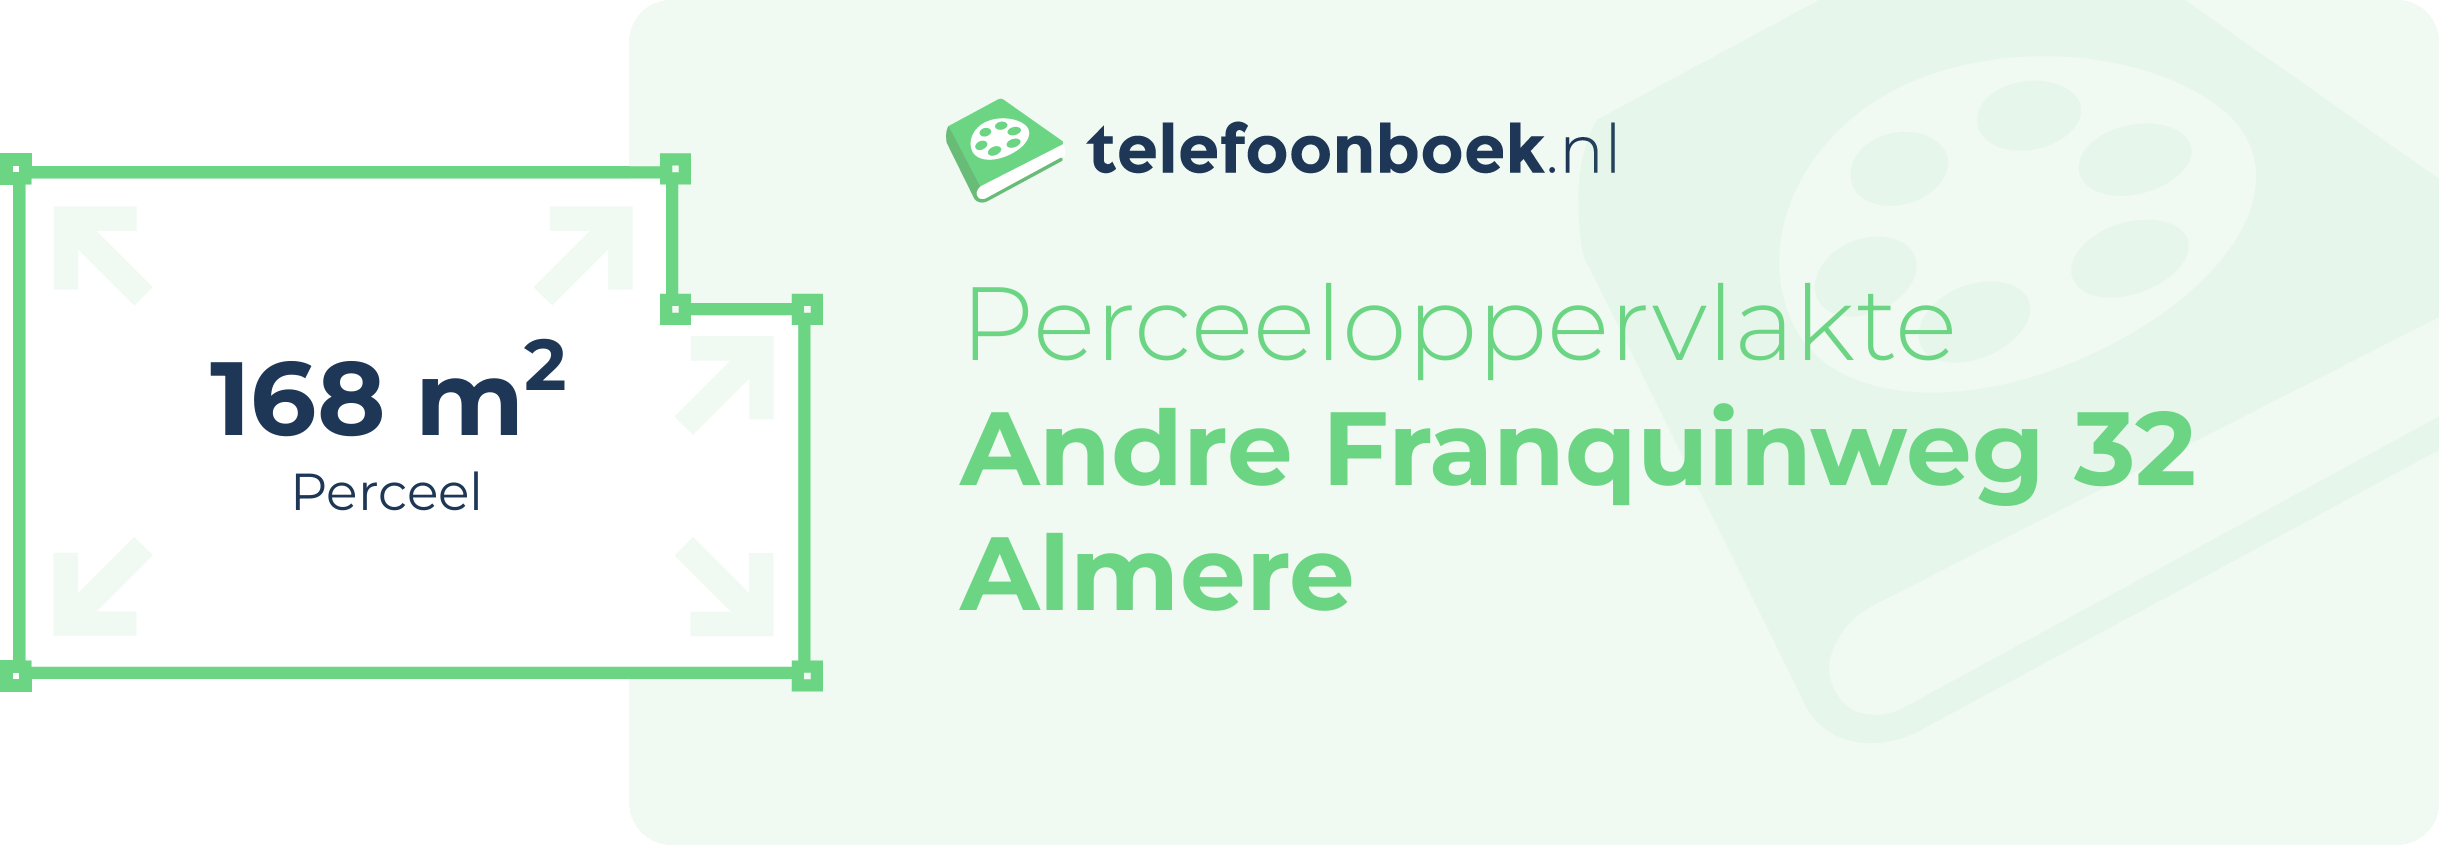 Perceeloppervlakte Andre Franquinweg 32 Almere